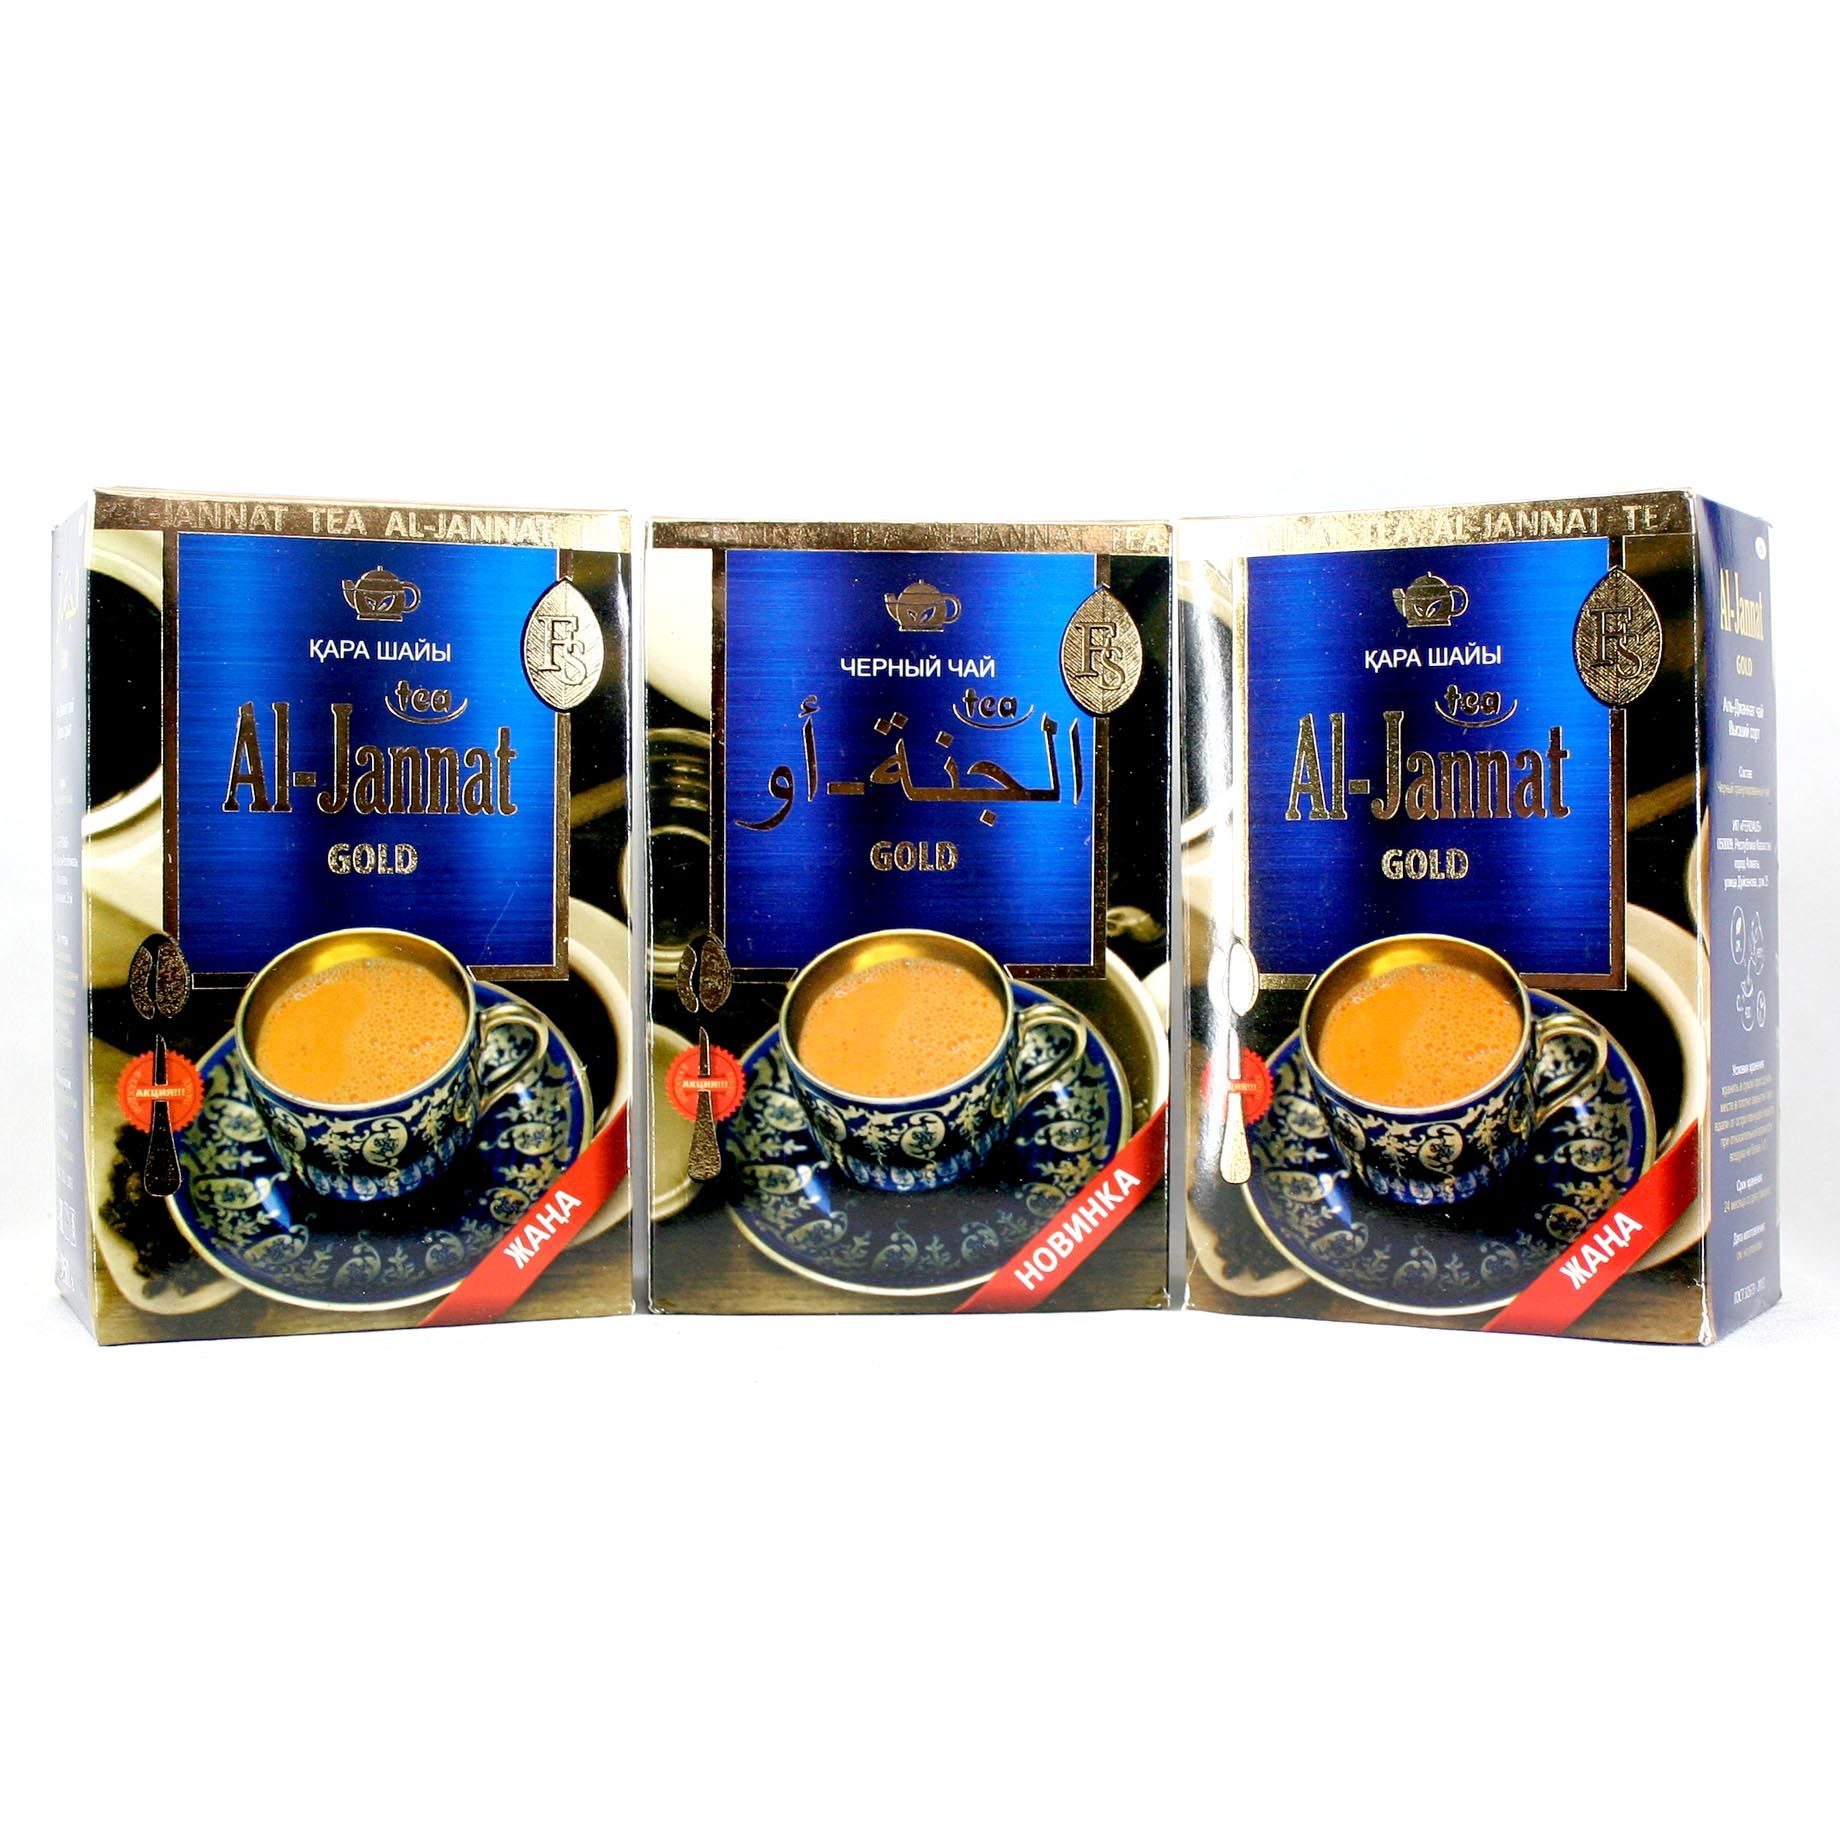 Чай аль джаннат. Пакистанский чай Аль Джаннат. Чай Original Gold. Чай пакистанский ai-Jannat Gold. Чай al-Jannat гранулированный 250 гр.